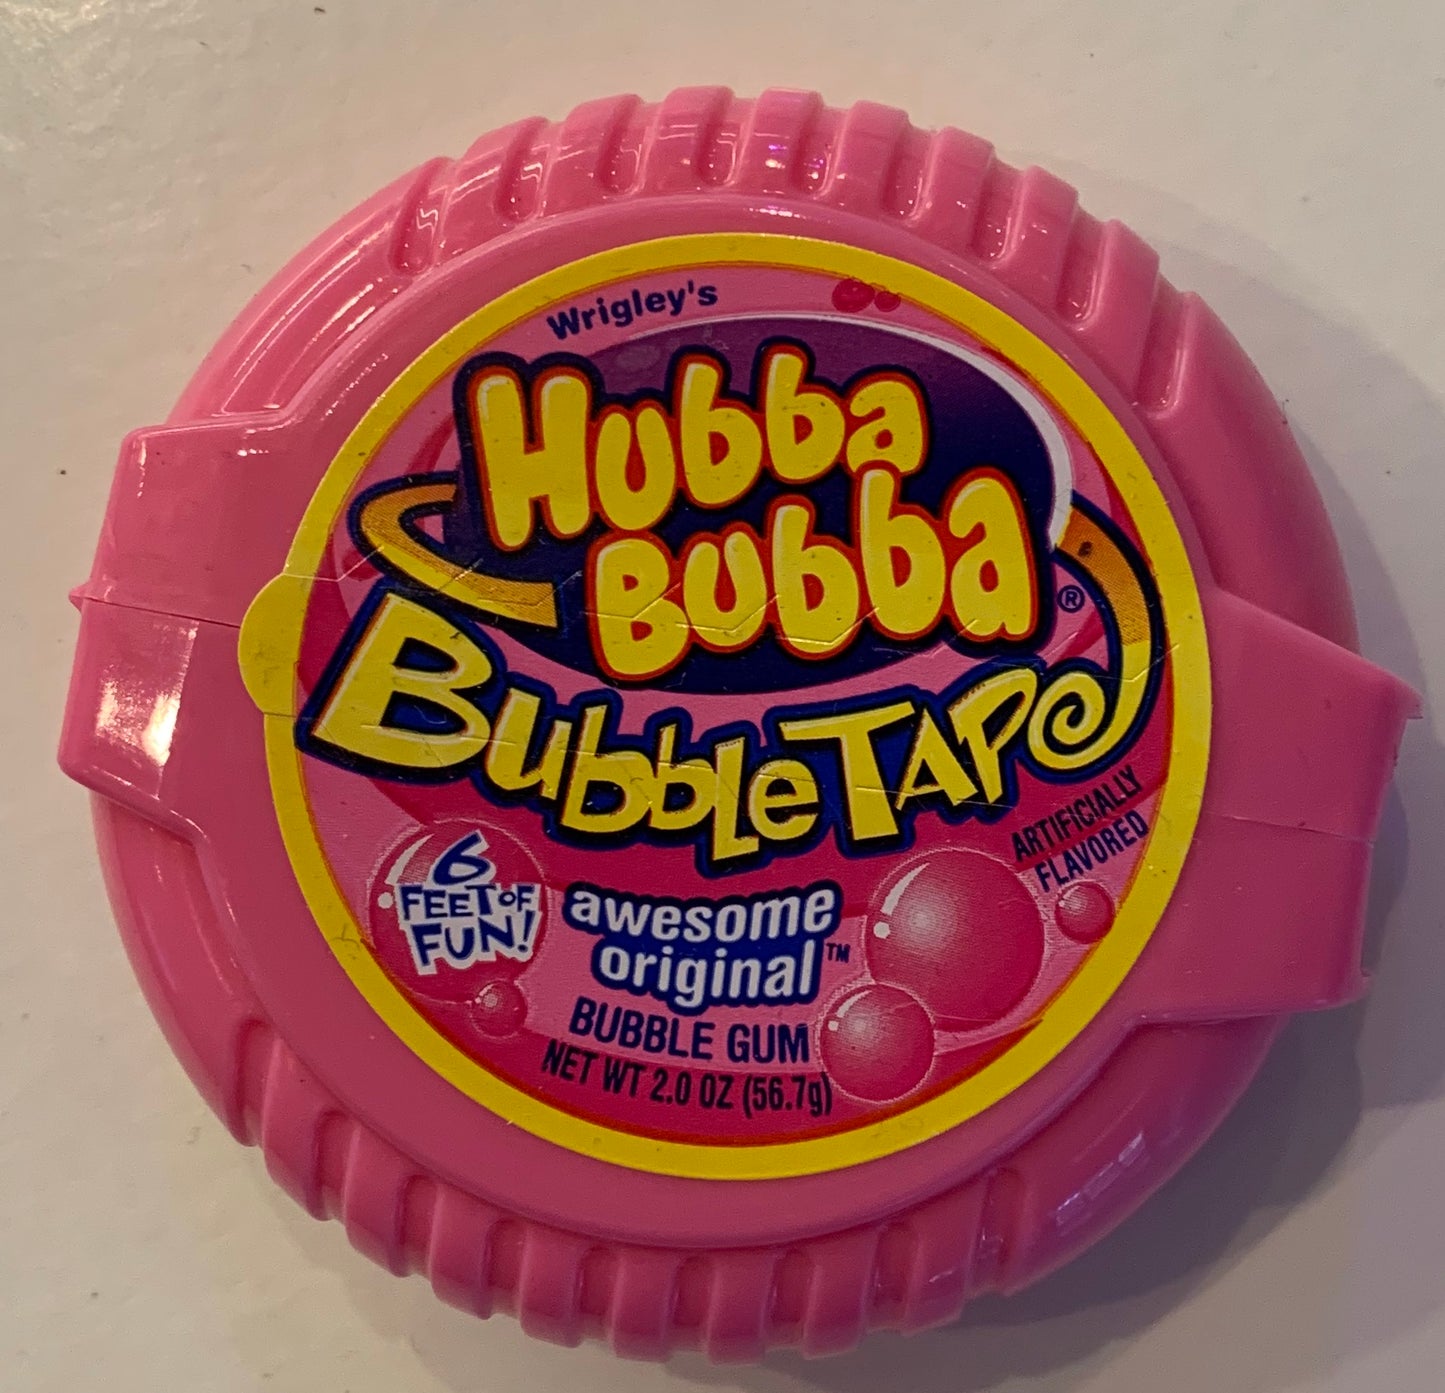 Hubba Bubba Original Bubble Tape Bubble Gum - 6 Foot Roll